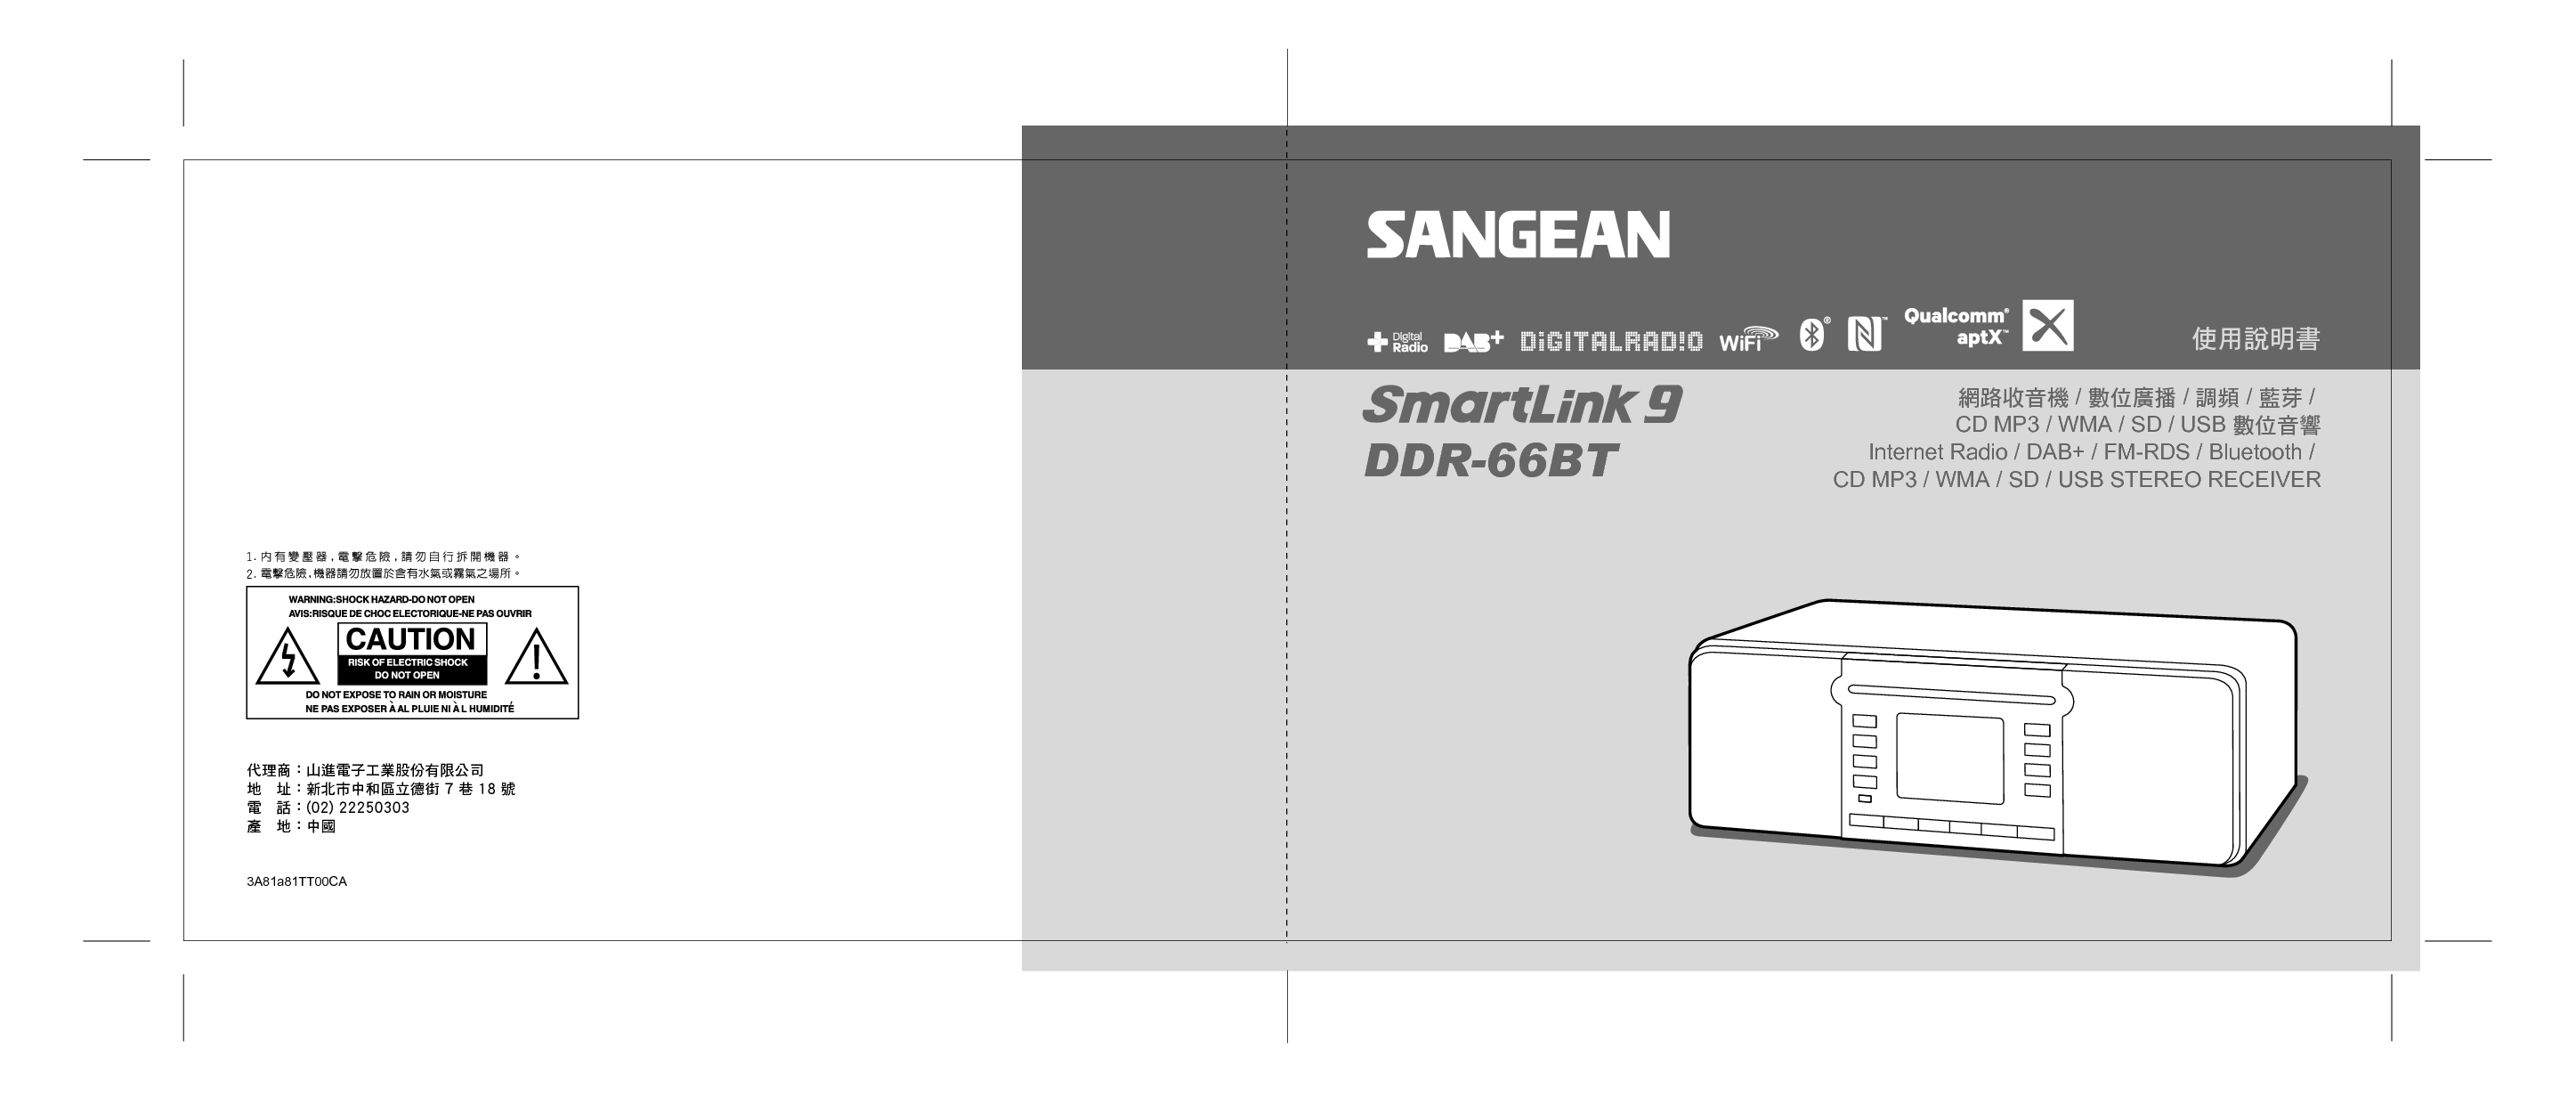 山进 Sangean DDR-66BT, SmartLink 9 使用说明书 封面